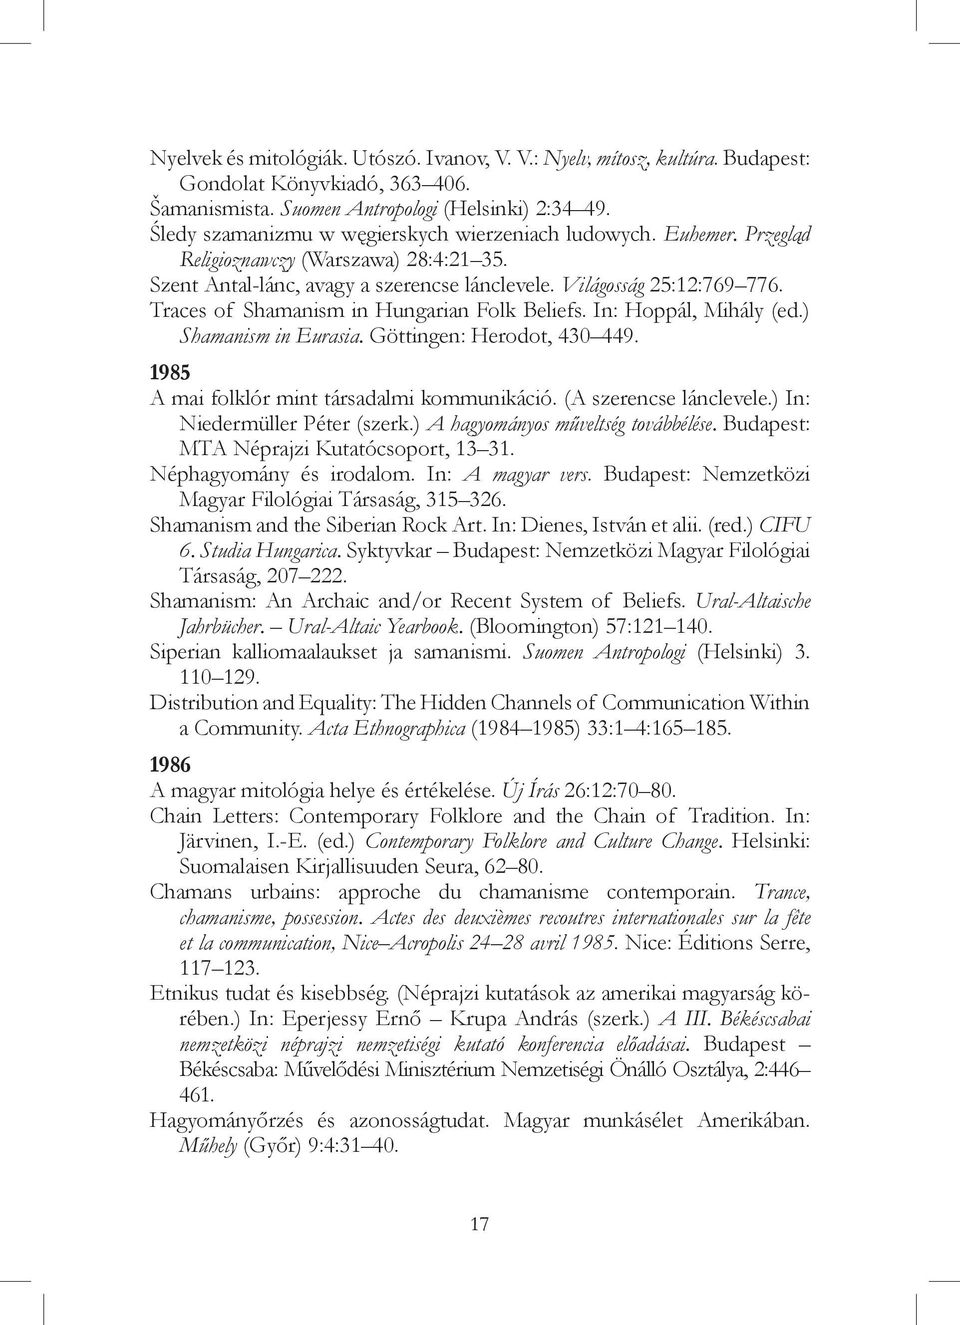 Traces of Shamanism in Hungarian Folk Beliefs. In: Hoppál, Mihály (ed.) Shamanism in Eurasia. Göttingen: Herodot, 430 449. 1985 A mai folklór mint társadalmi kommunikáció. (A szerencse lánclevele.